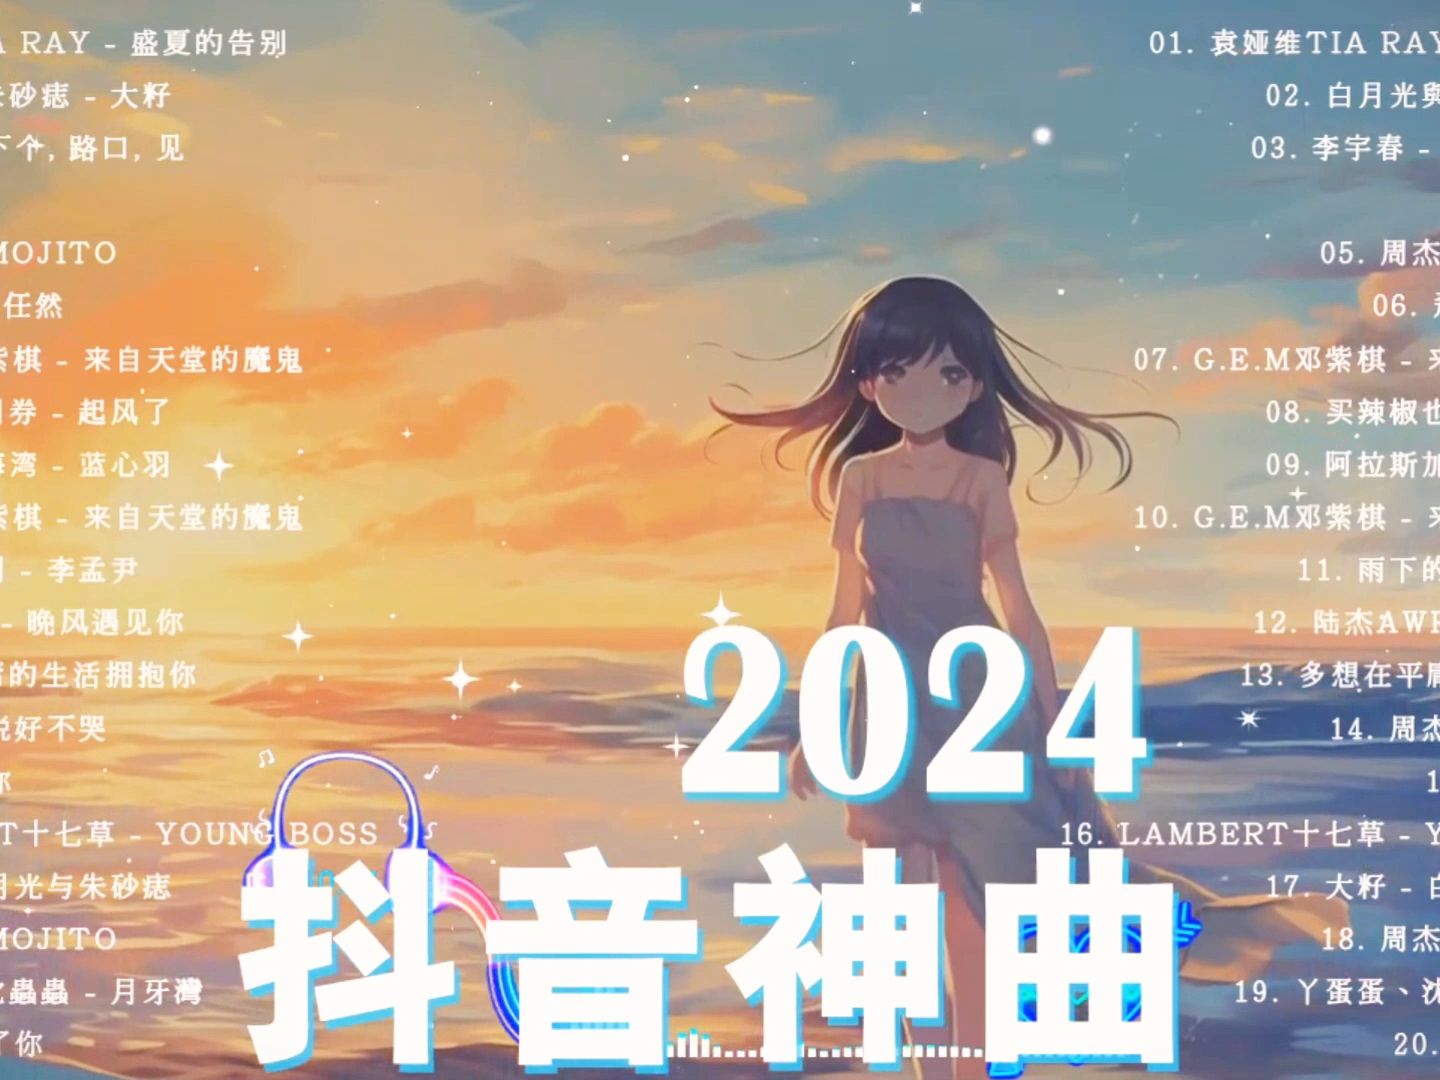 2024 流行歌曲 2023热门歌曲 抖音热歌排行榜 抖音华语热歌榜 抖音